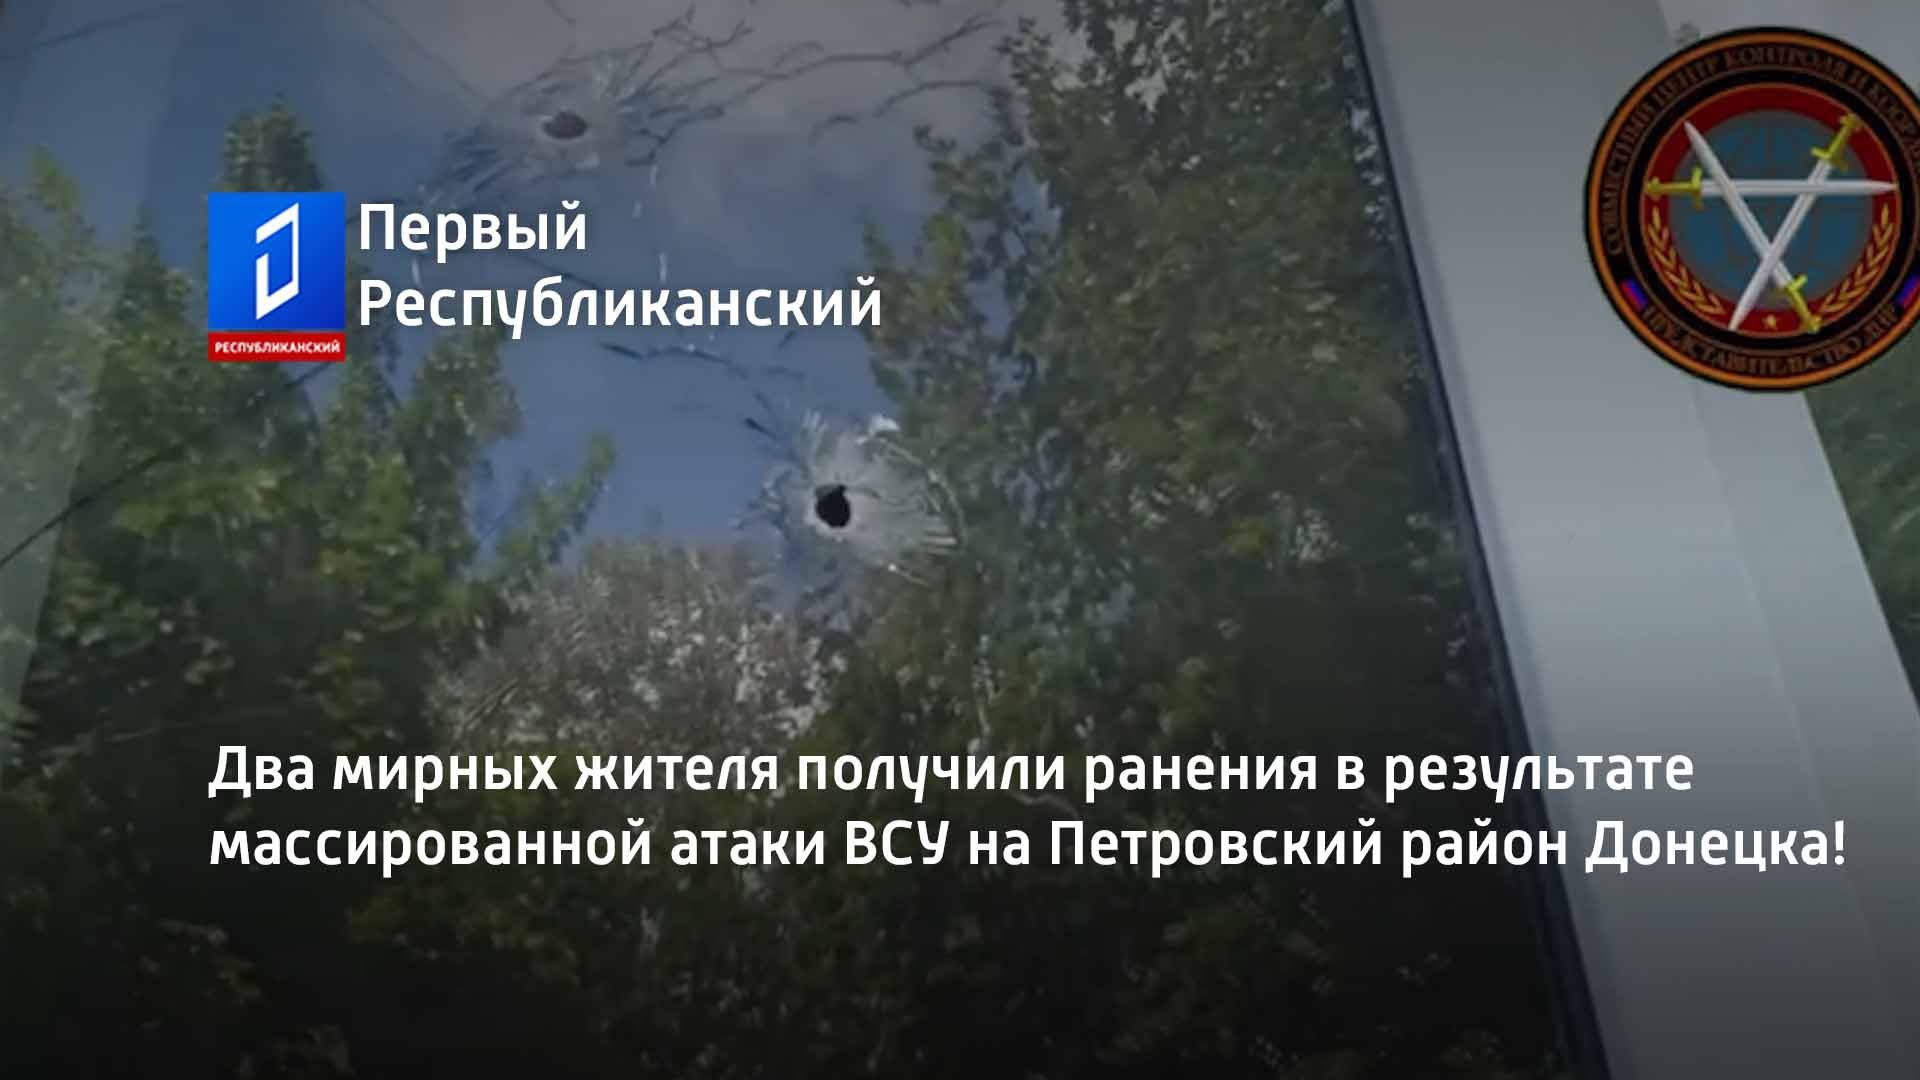 Два мирных жителя получили ранения в результате массированной атаки ВСУ на Петровский район Донецка!